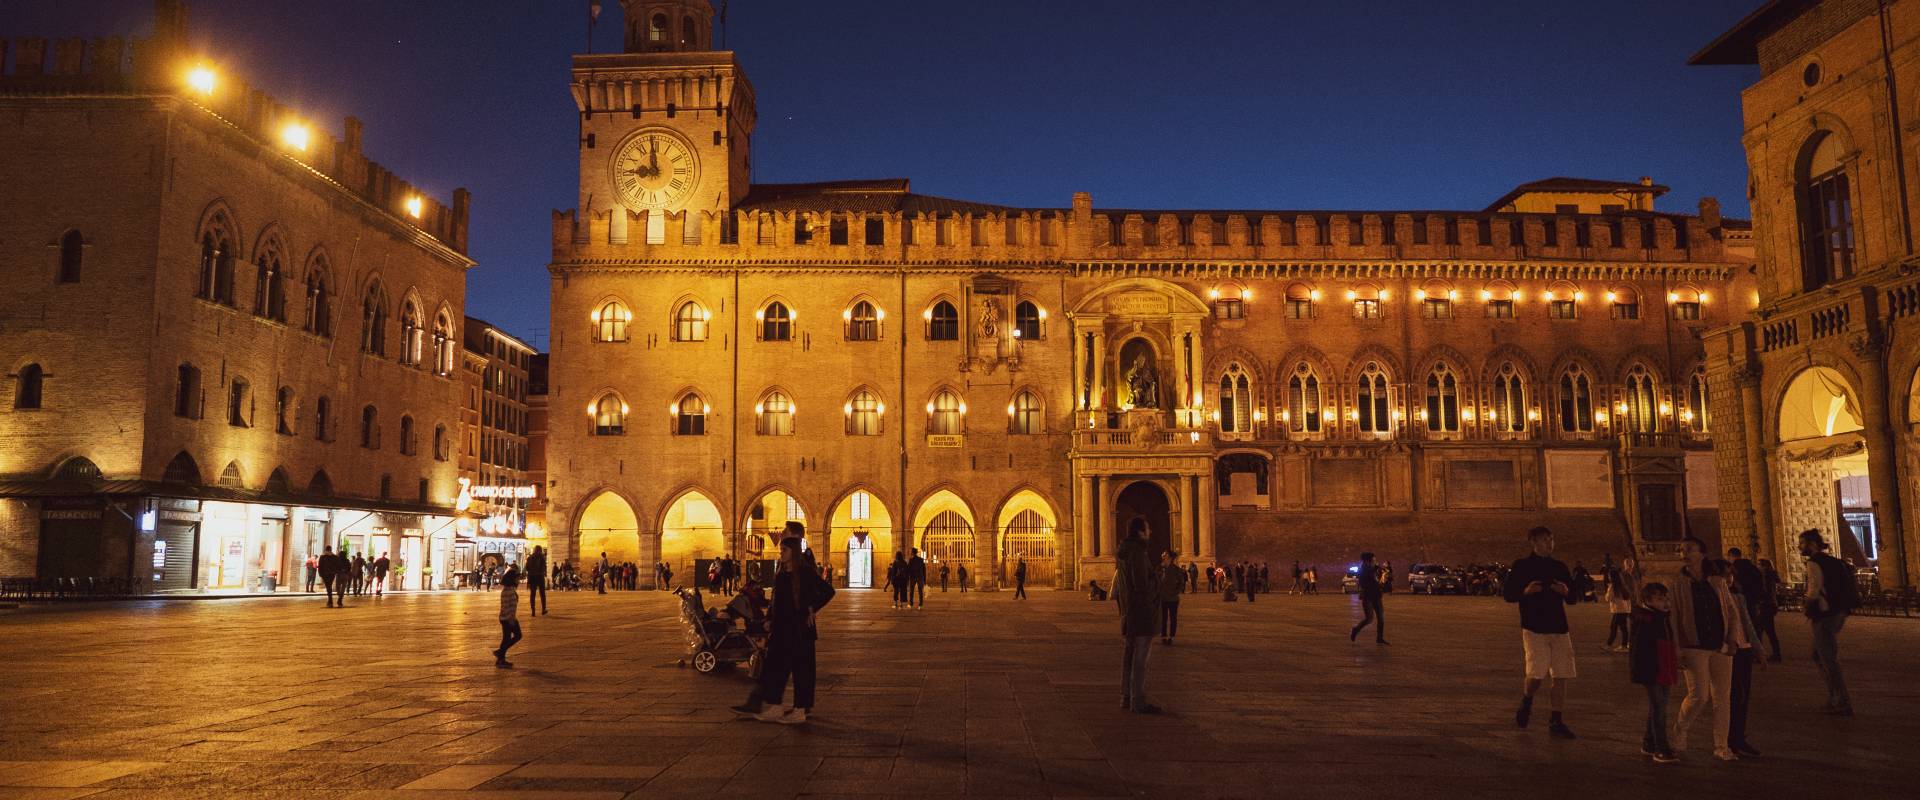 Piazza maggiore in una sera d'aprile photo by Crisbina